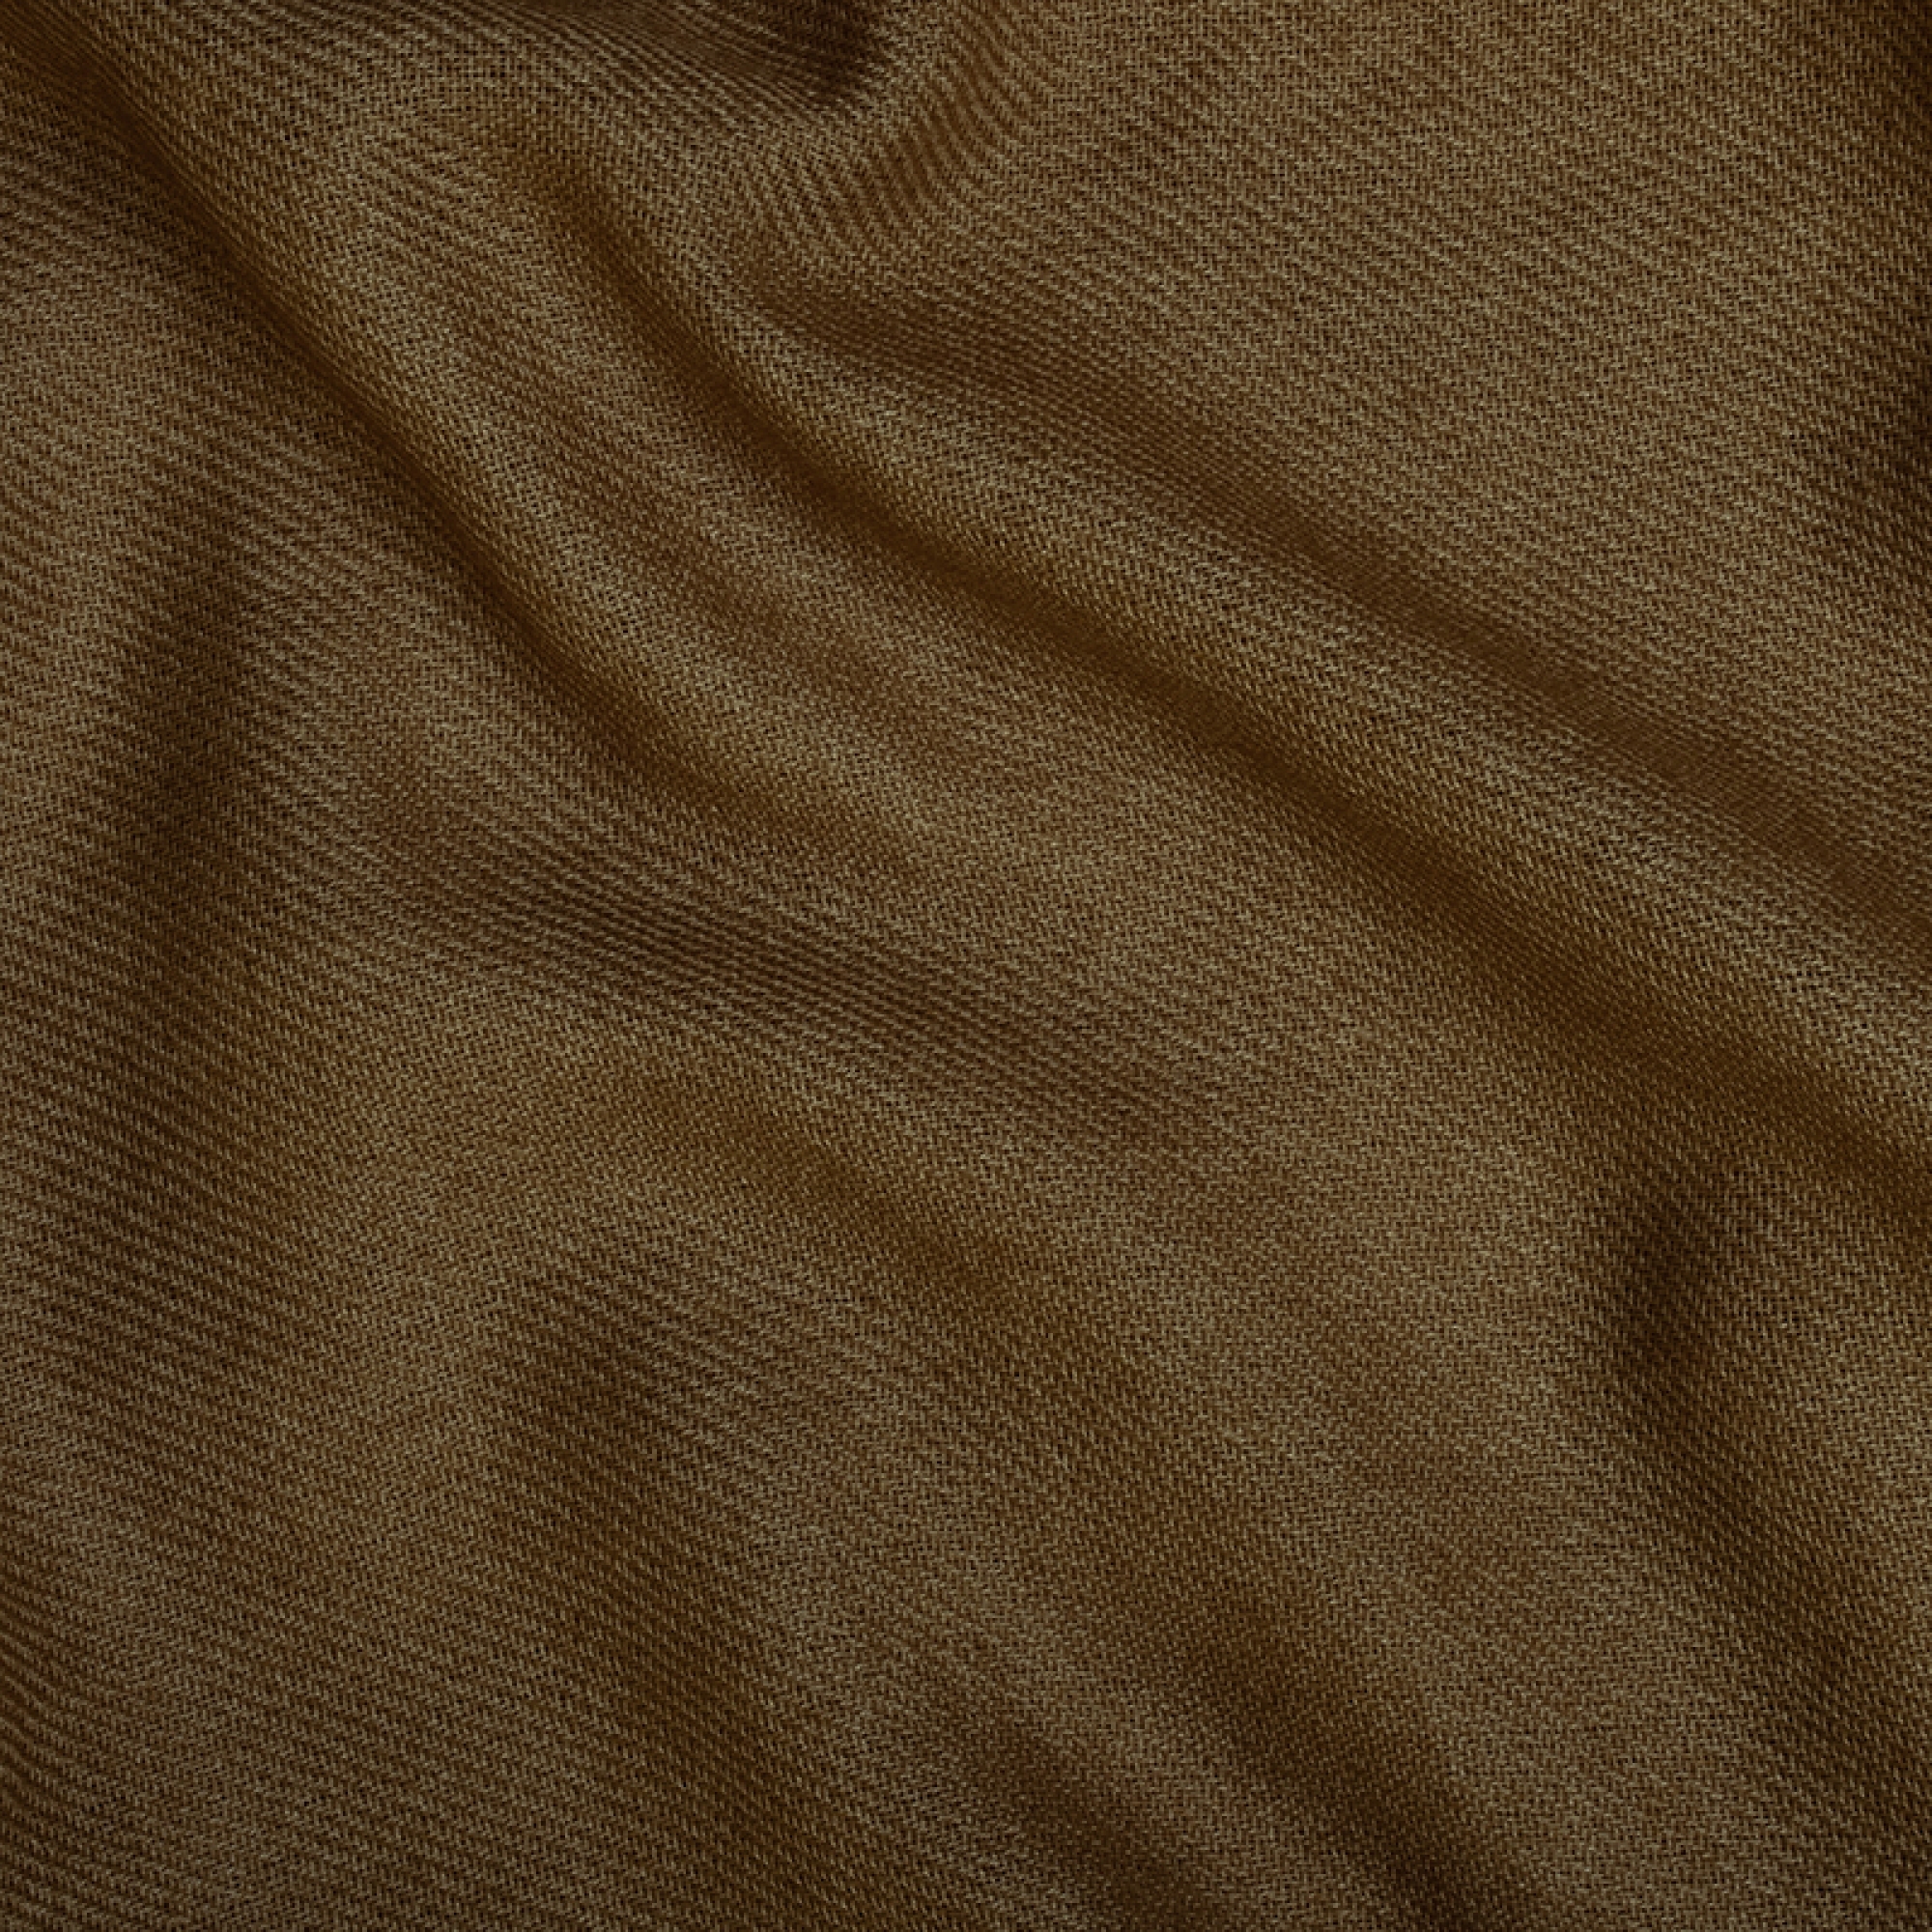 Cachemire pull femme etoles chales niry bronze 200x90cm